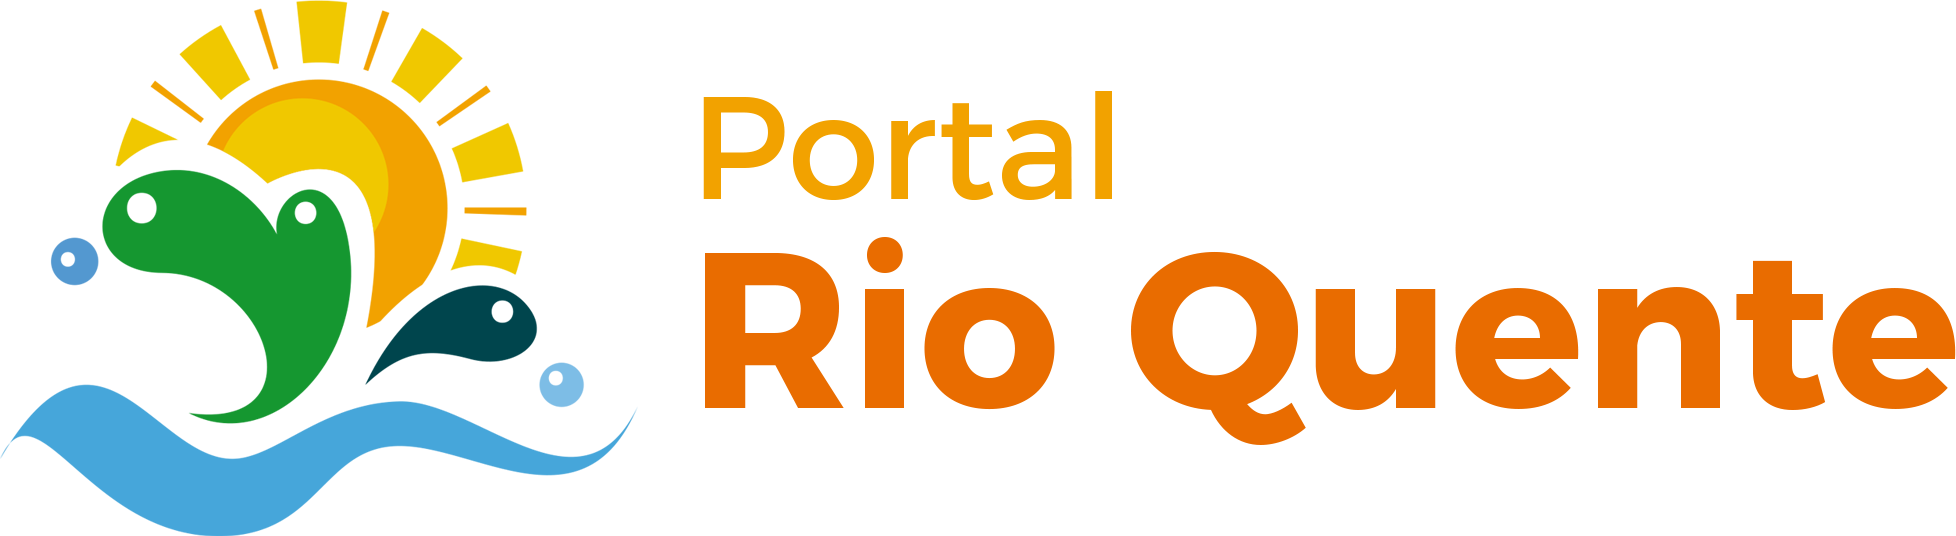 Portal Rio Quente